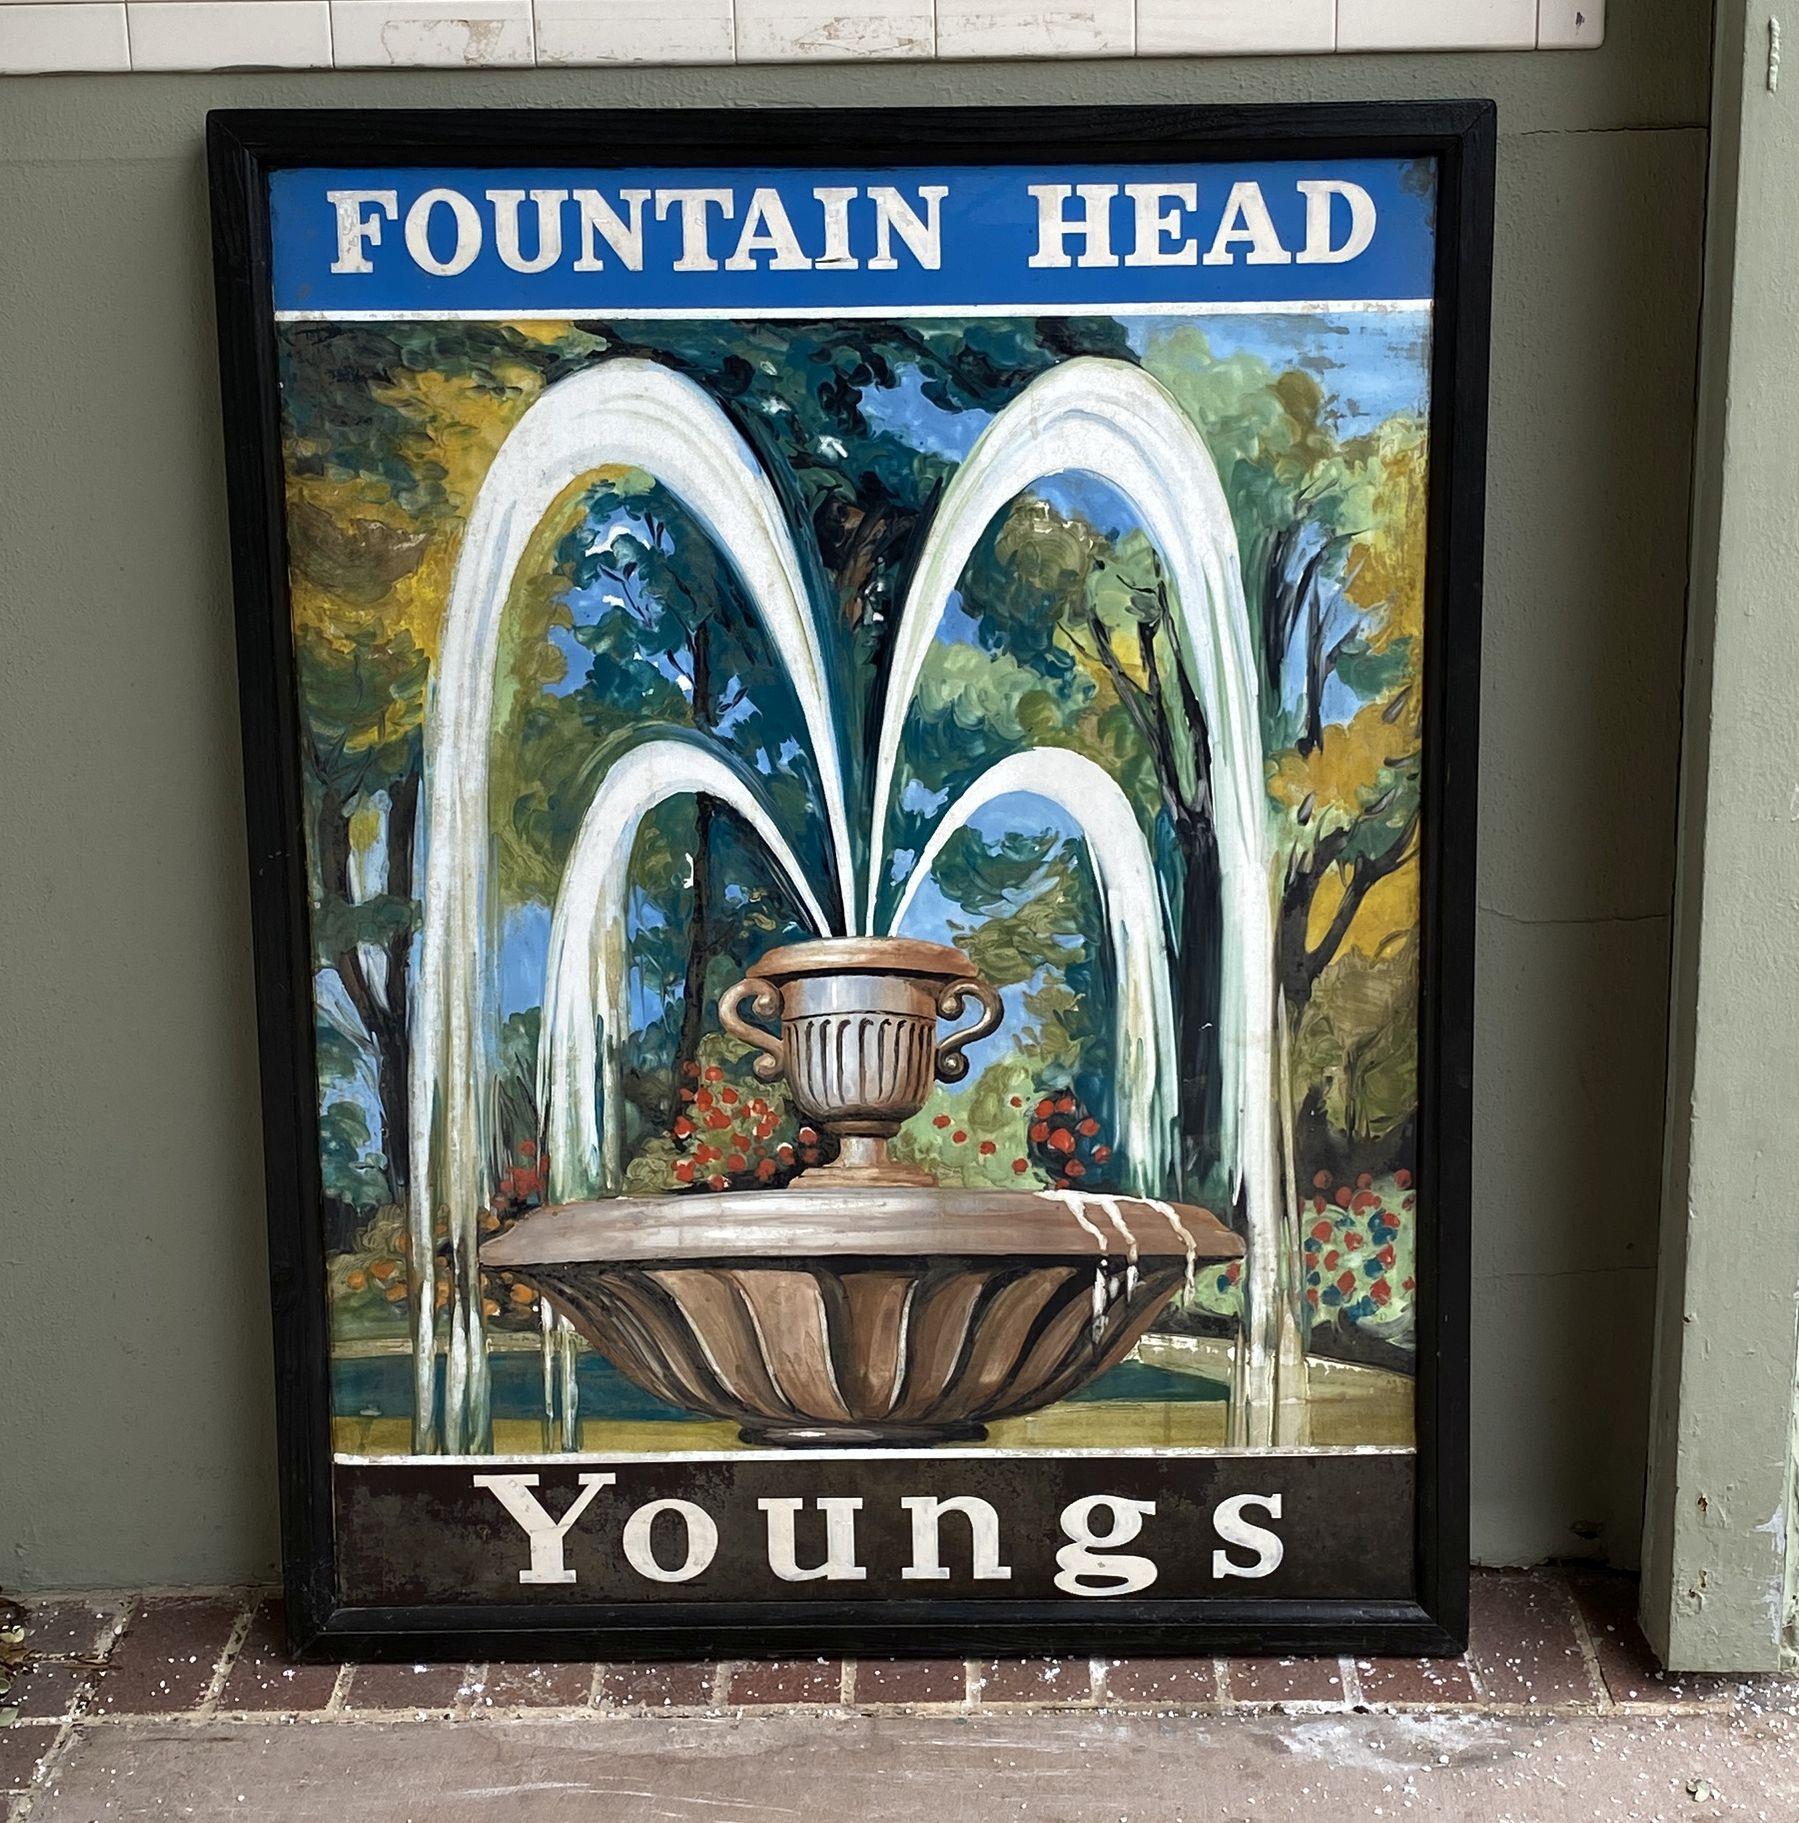 Ein authentisches englisches Pub-Schild (einseitig) mit einem Gemälde einer klassischen Urne oder eines Brunnens, der in einem Park Kaskaden von Wasser ausspuckt, mit dem Titel: Worth Brewery - The Cricketer's Arms.

Ein sehr schönes Beispiel für